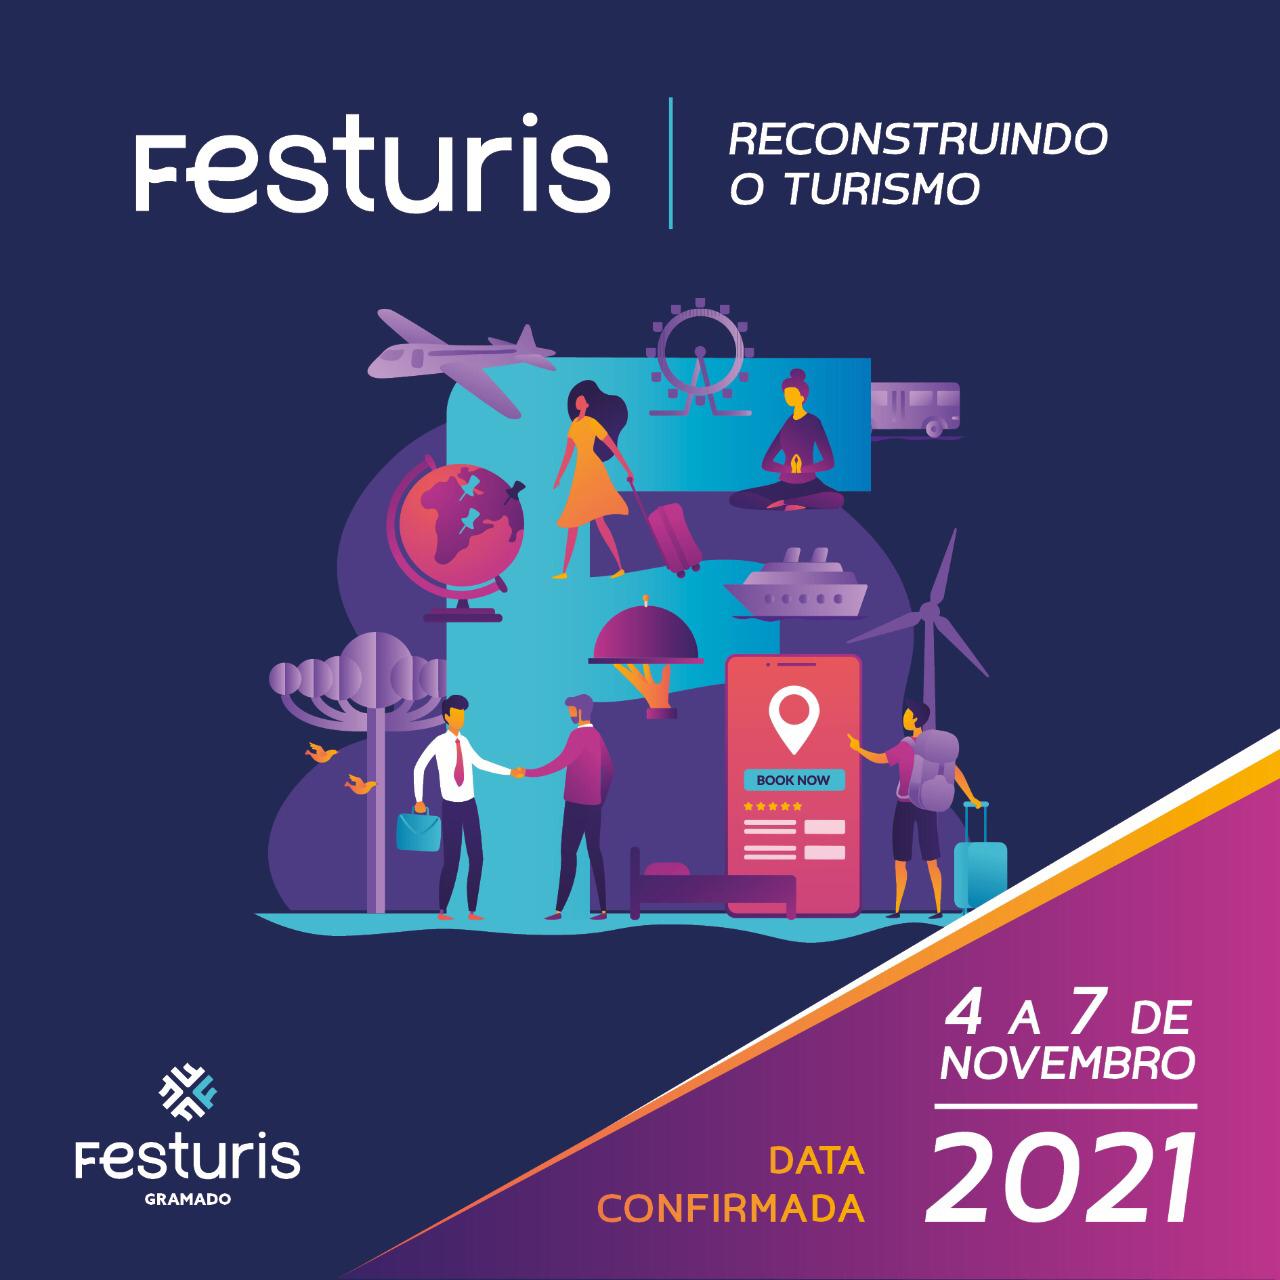 Capa do blog: Festuris é confirmado em novembro com o tema “Reconstruindo o Turismo”